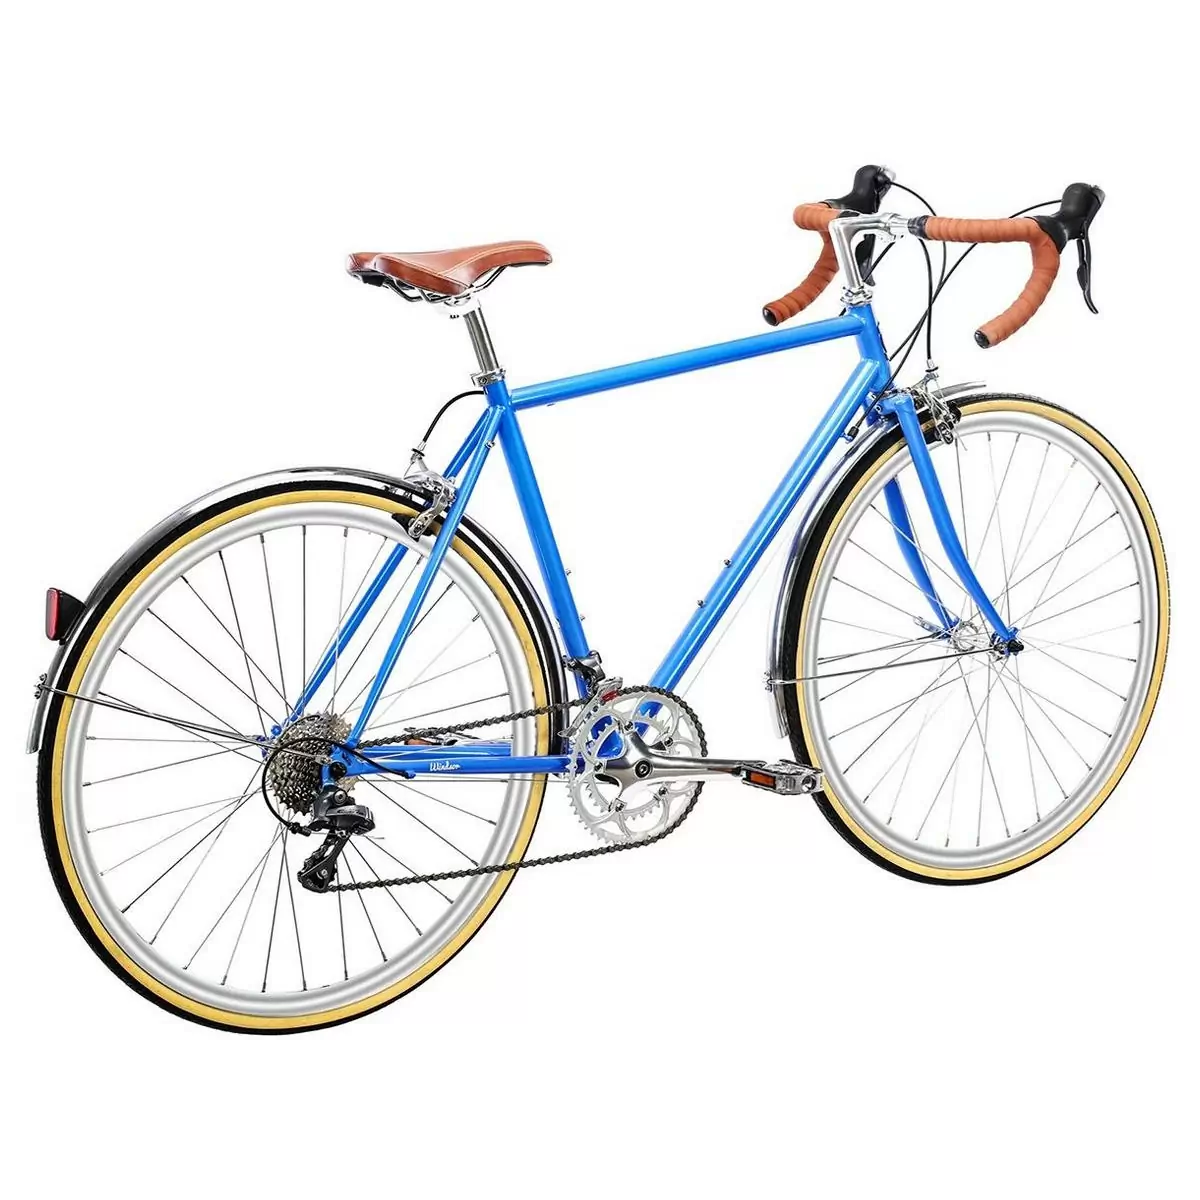 Bicicleta urbana TROY 16spd azul windsor pequena 49cm #2